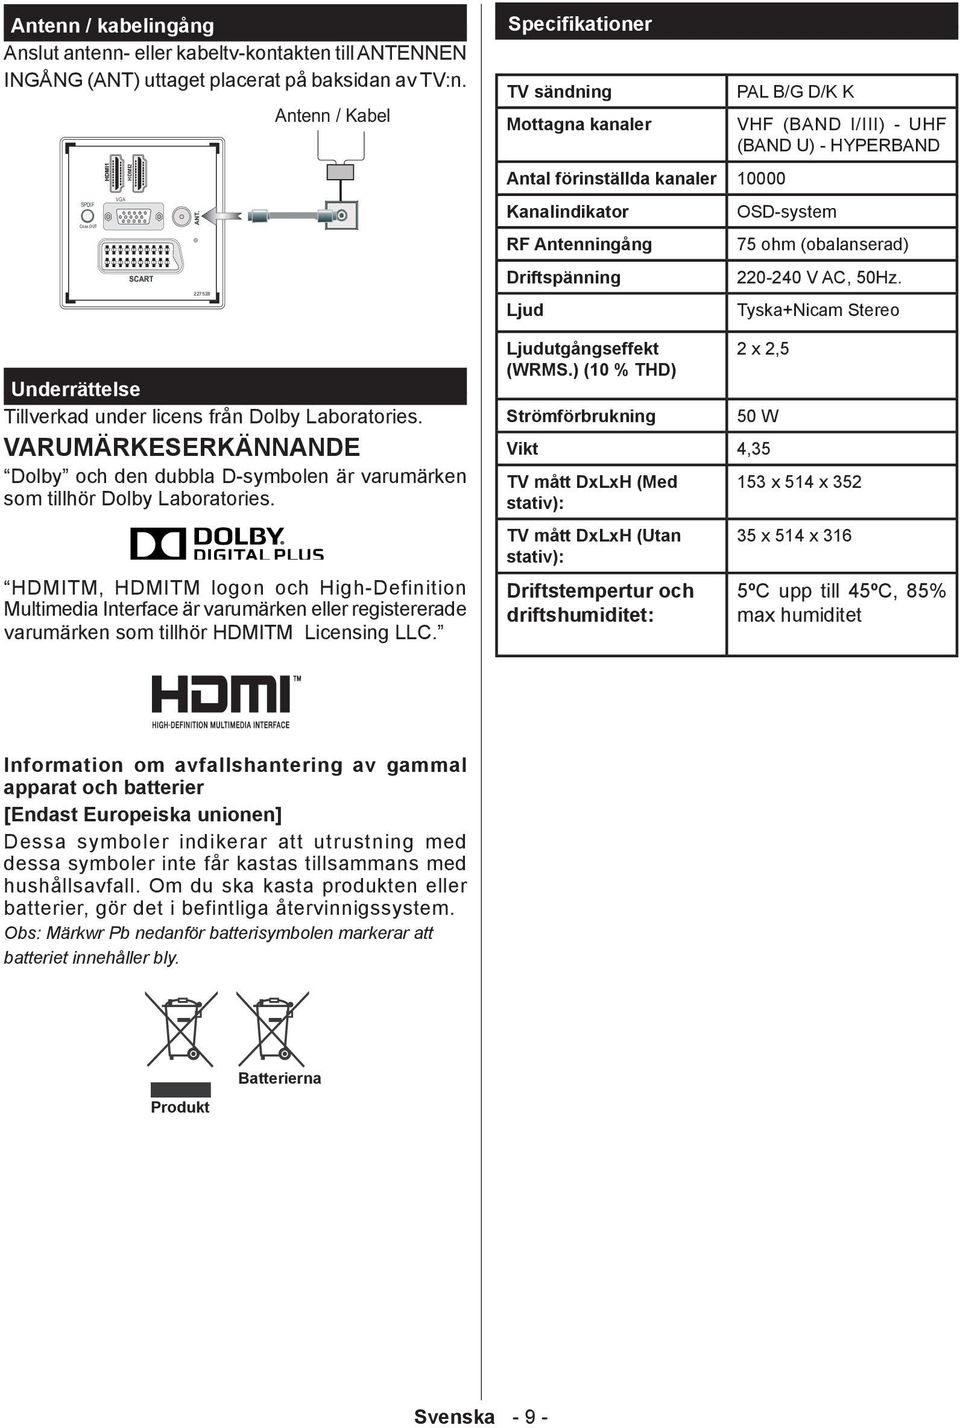 HDMITM, HDMITM logon och High-Definition Multimedia Interface är varumärken eller registererade varumärken som tillhör HDMITM Licensing LLC.